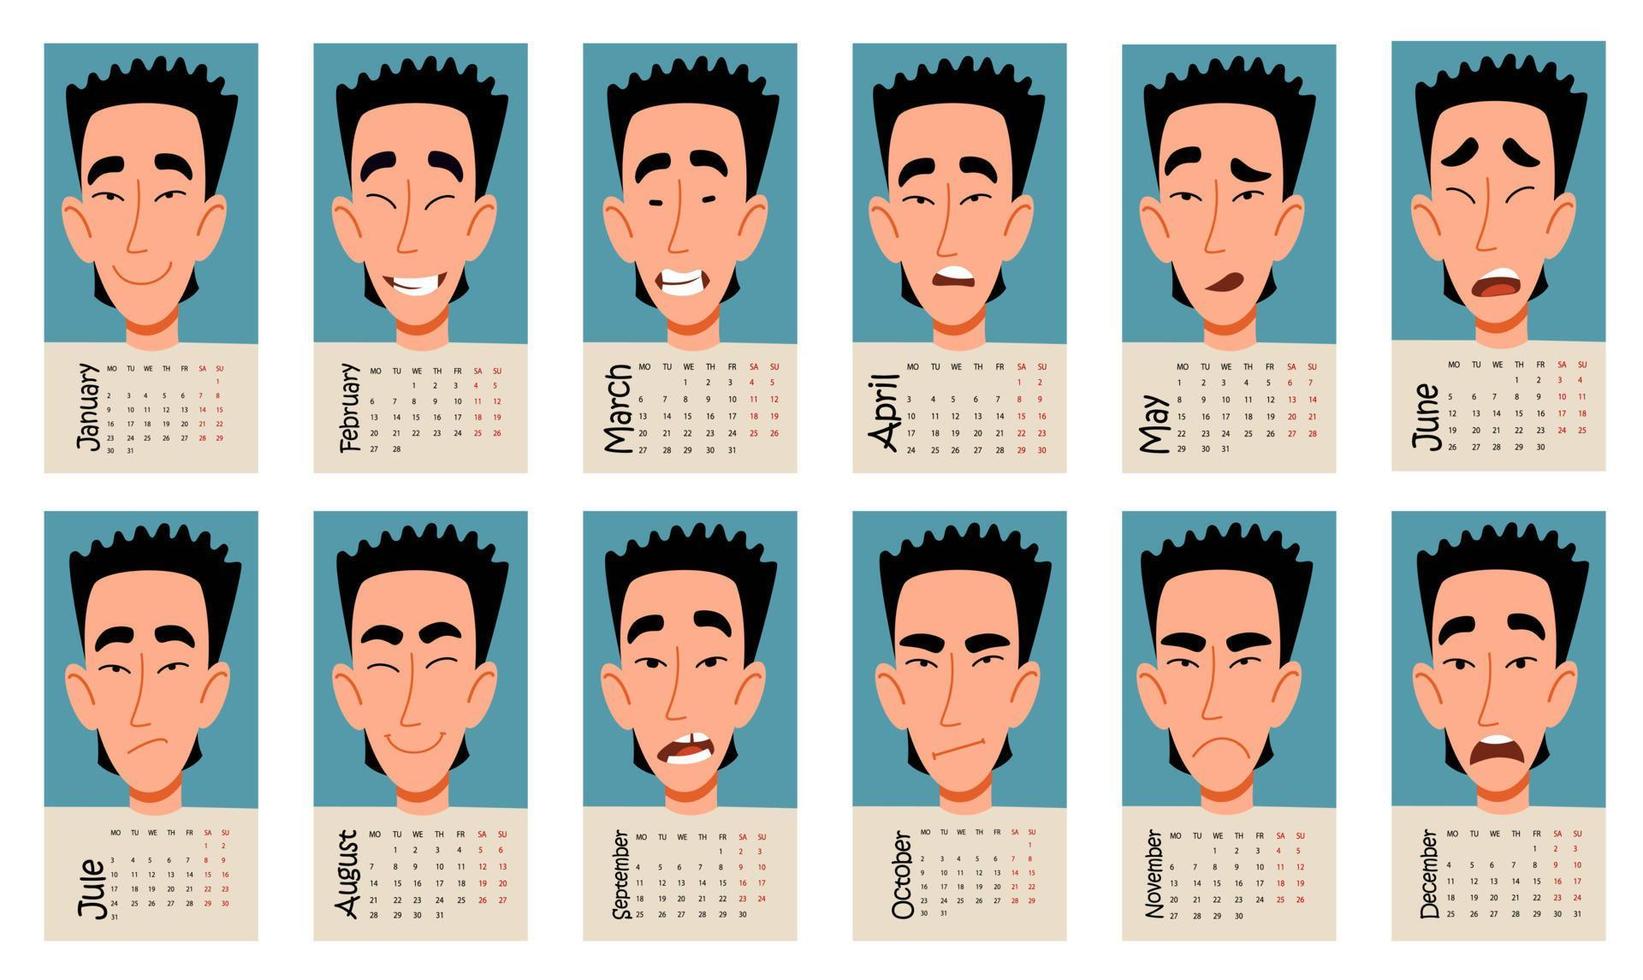 calendário para 2023 com emoções engraçadas de um personagem masculino asiático. ilustração em vetor de um design plano.